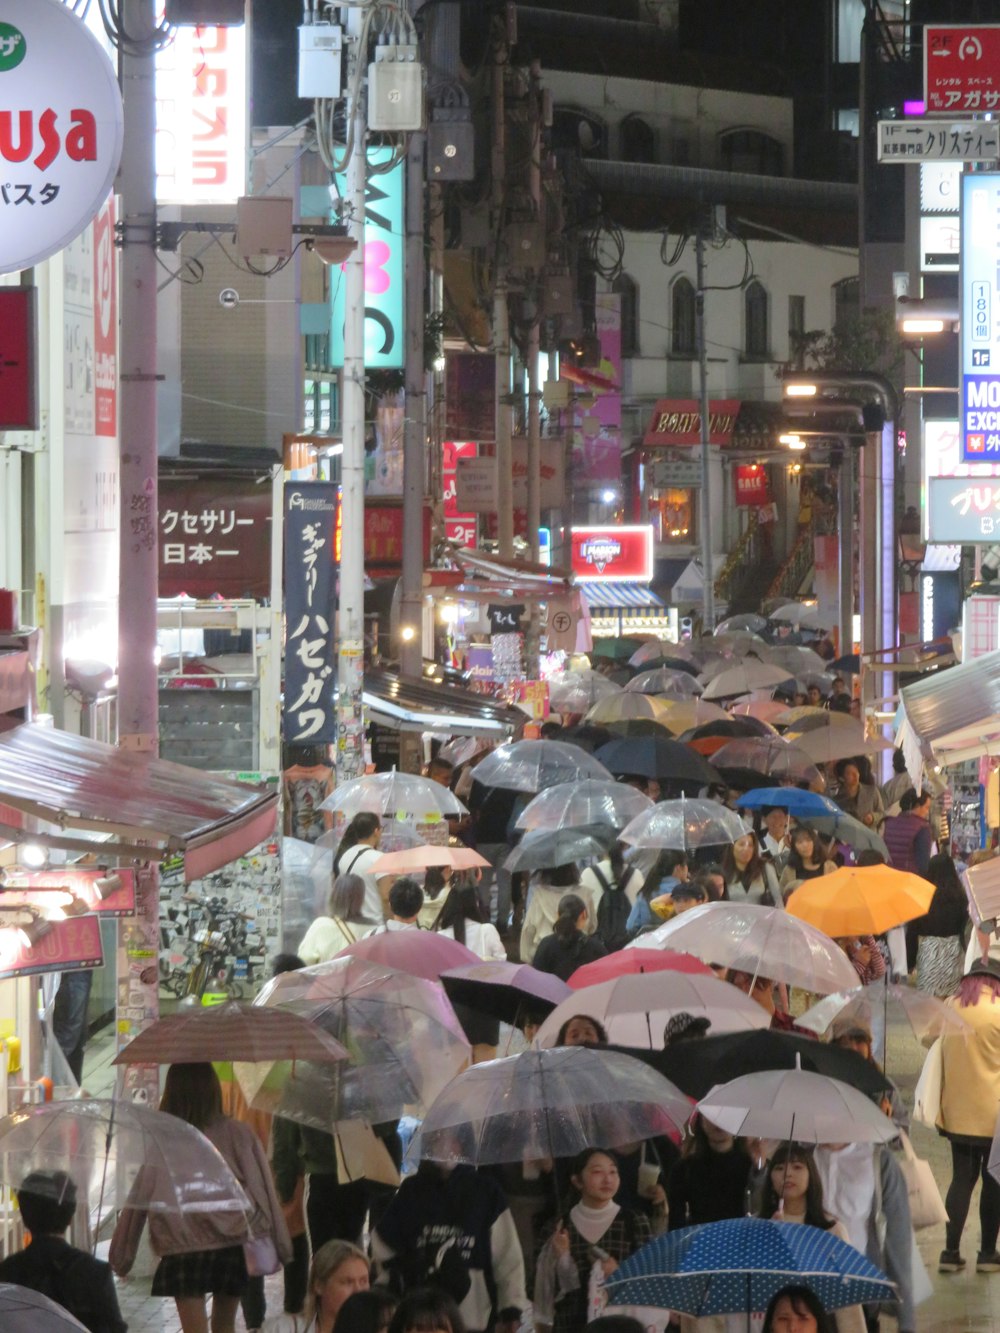 Una folla di persone che camminano lungo una strada tenendo ombrelli